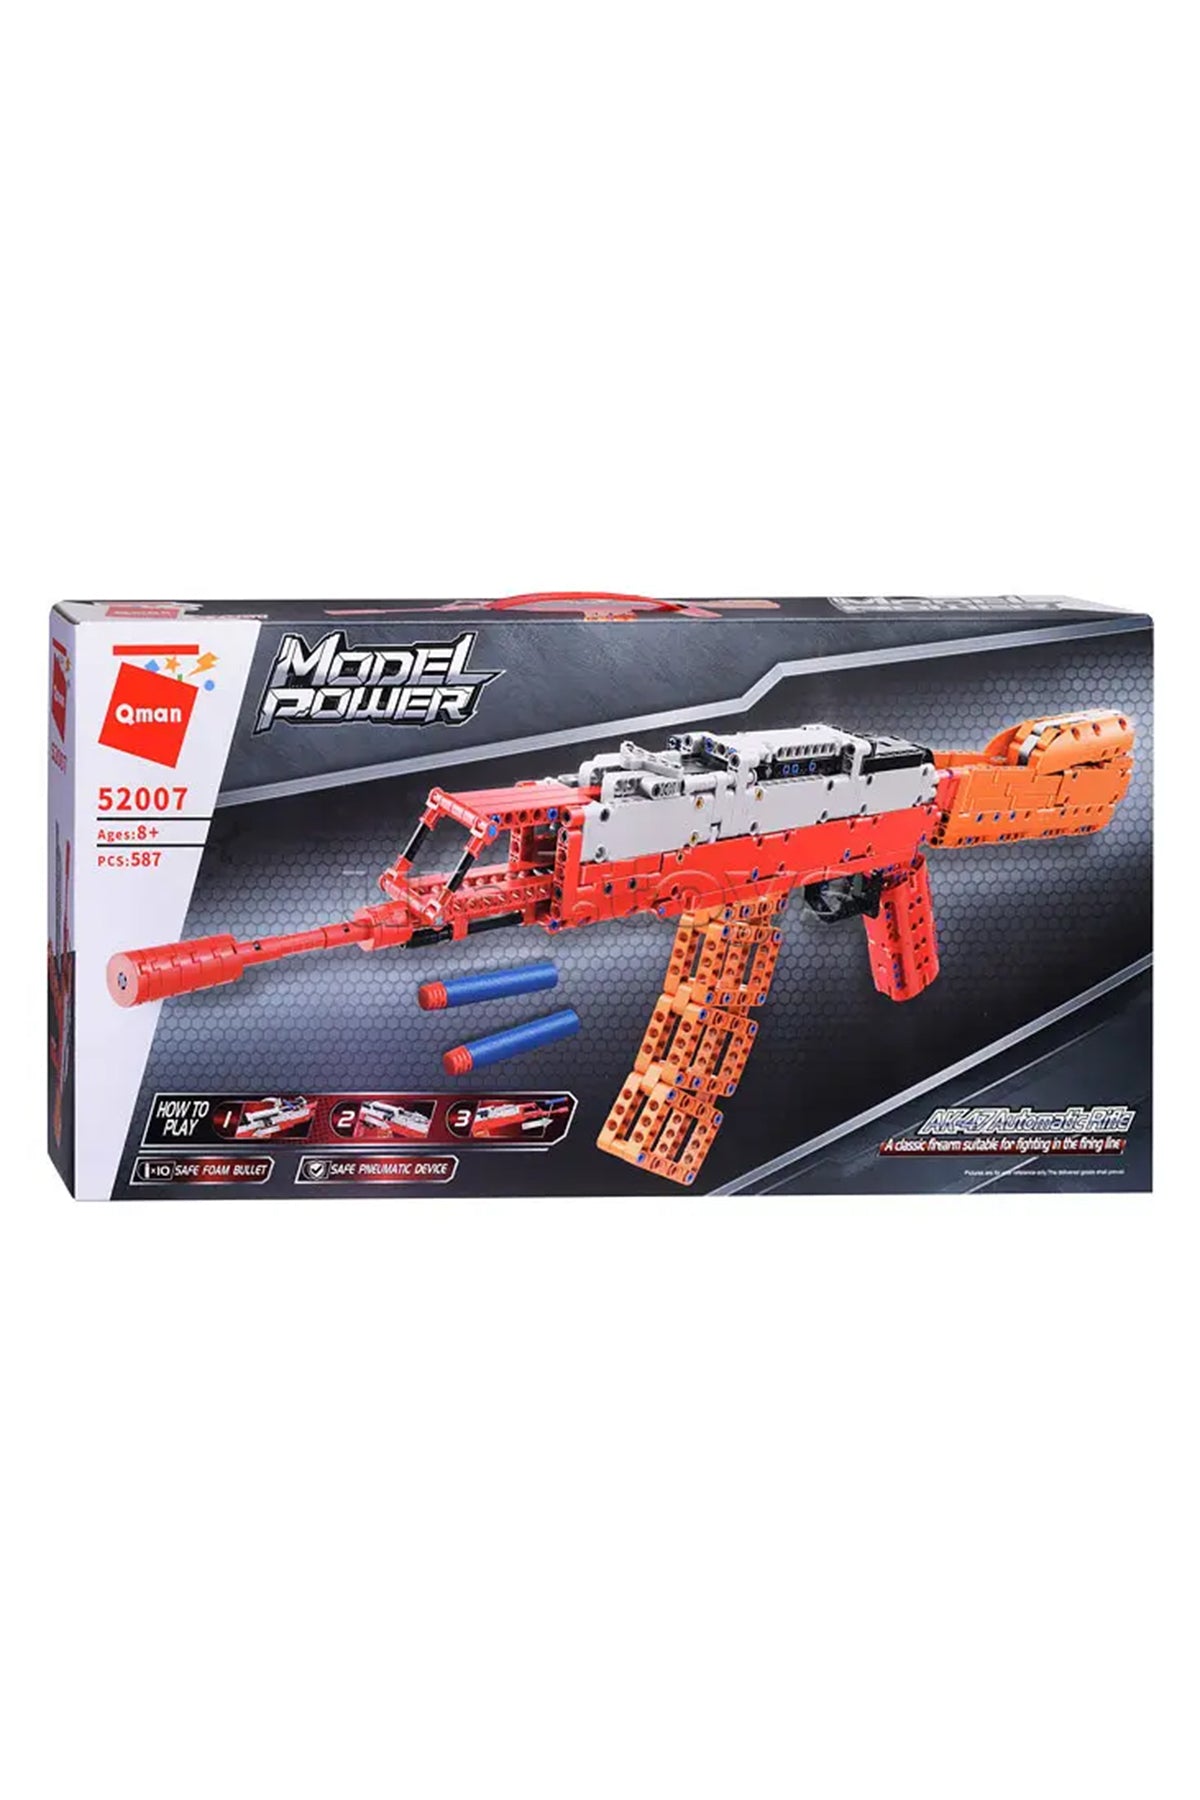 Qman: AK-47 Automatic Rifle Assemble Toy Play Set